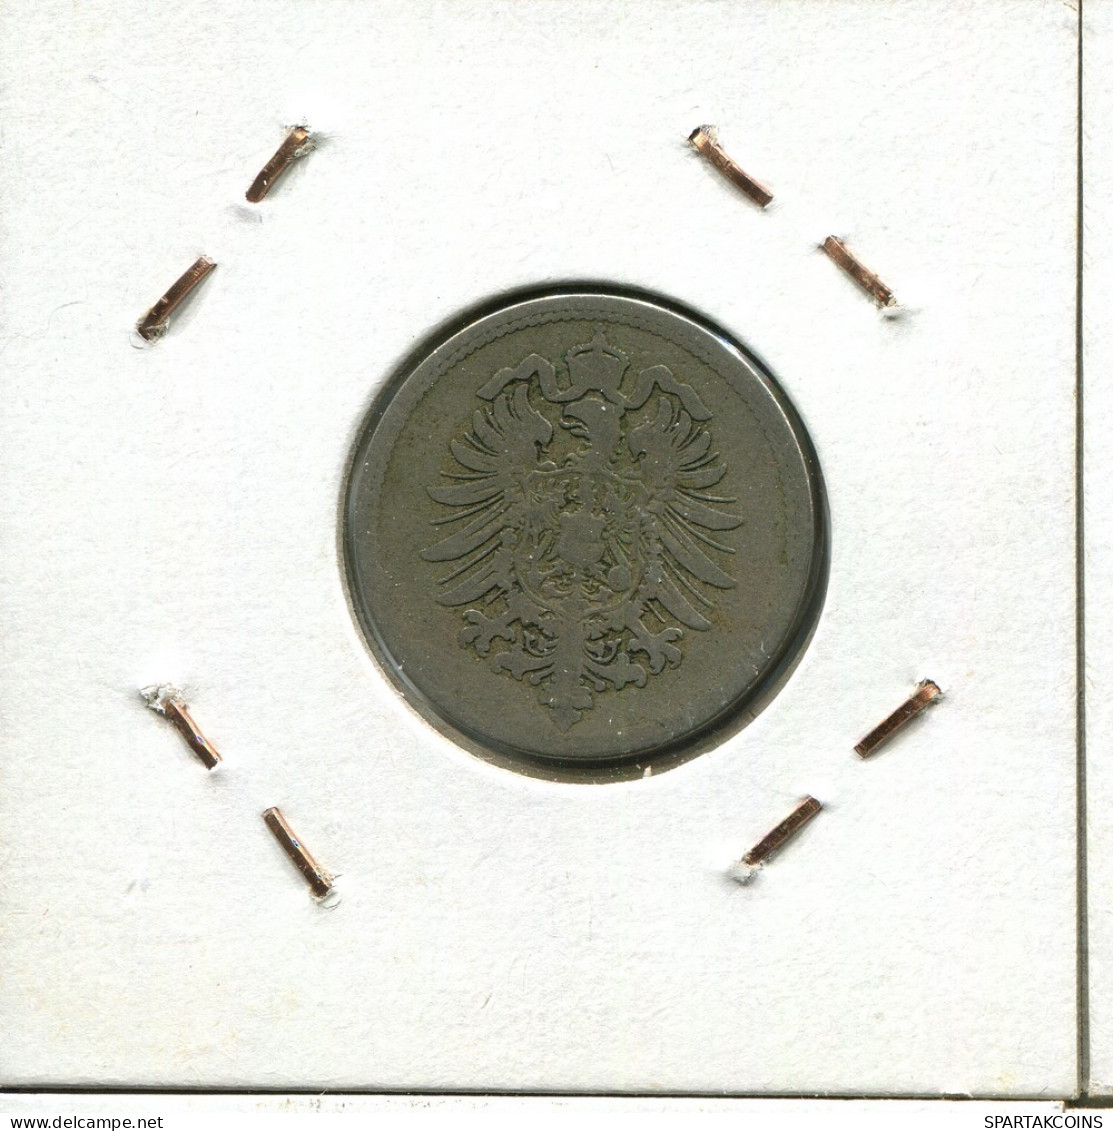 10 PFENNIG 1874 A ALEMANIA Moneda GERMANY #DB898.E.A - 10 Pfennig